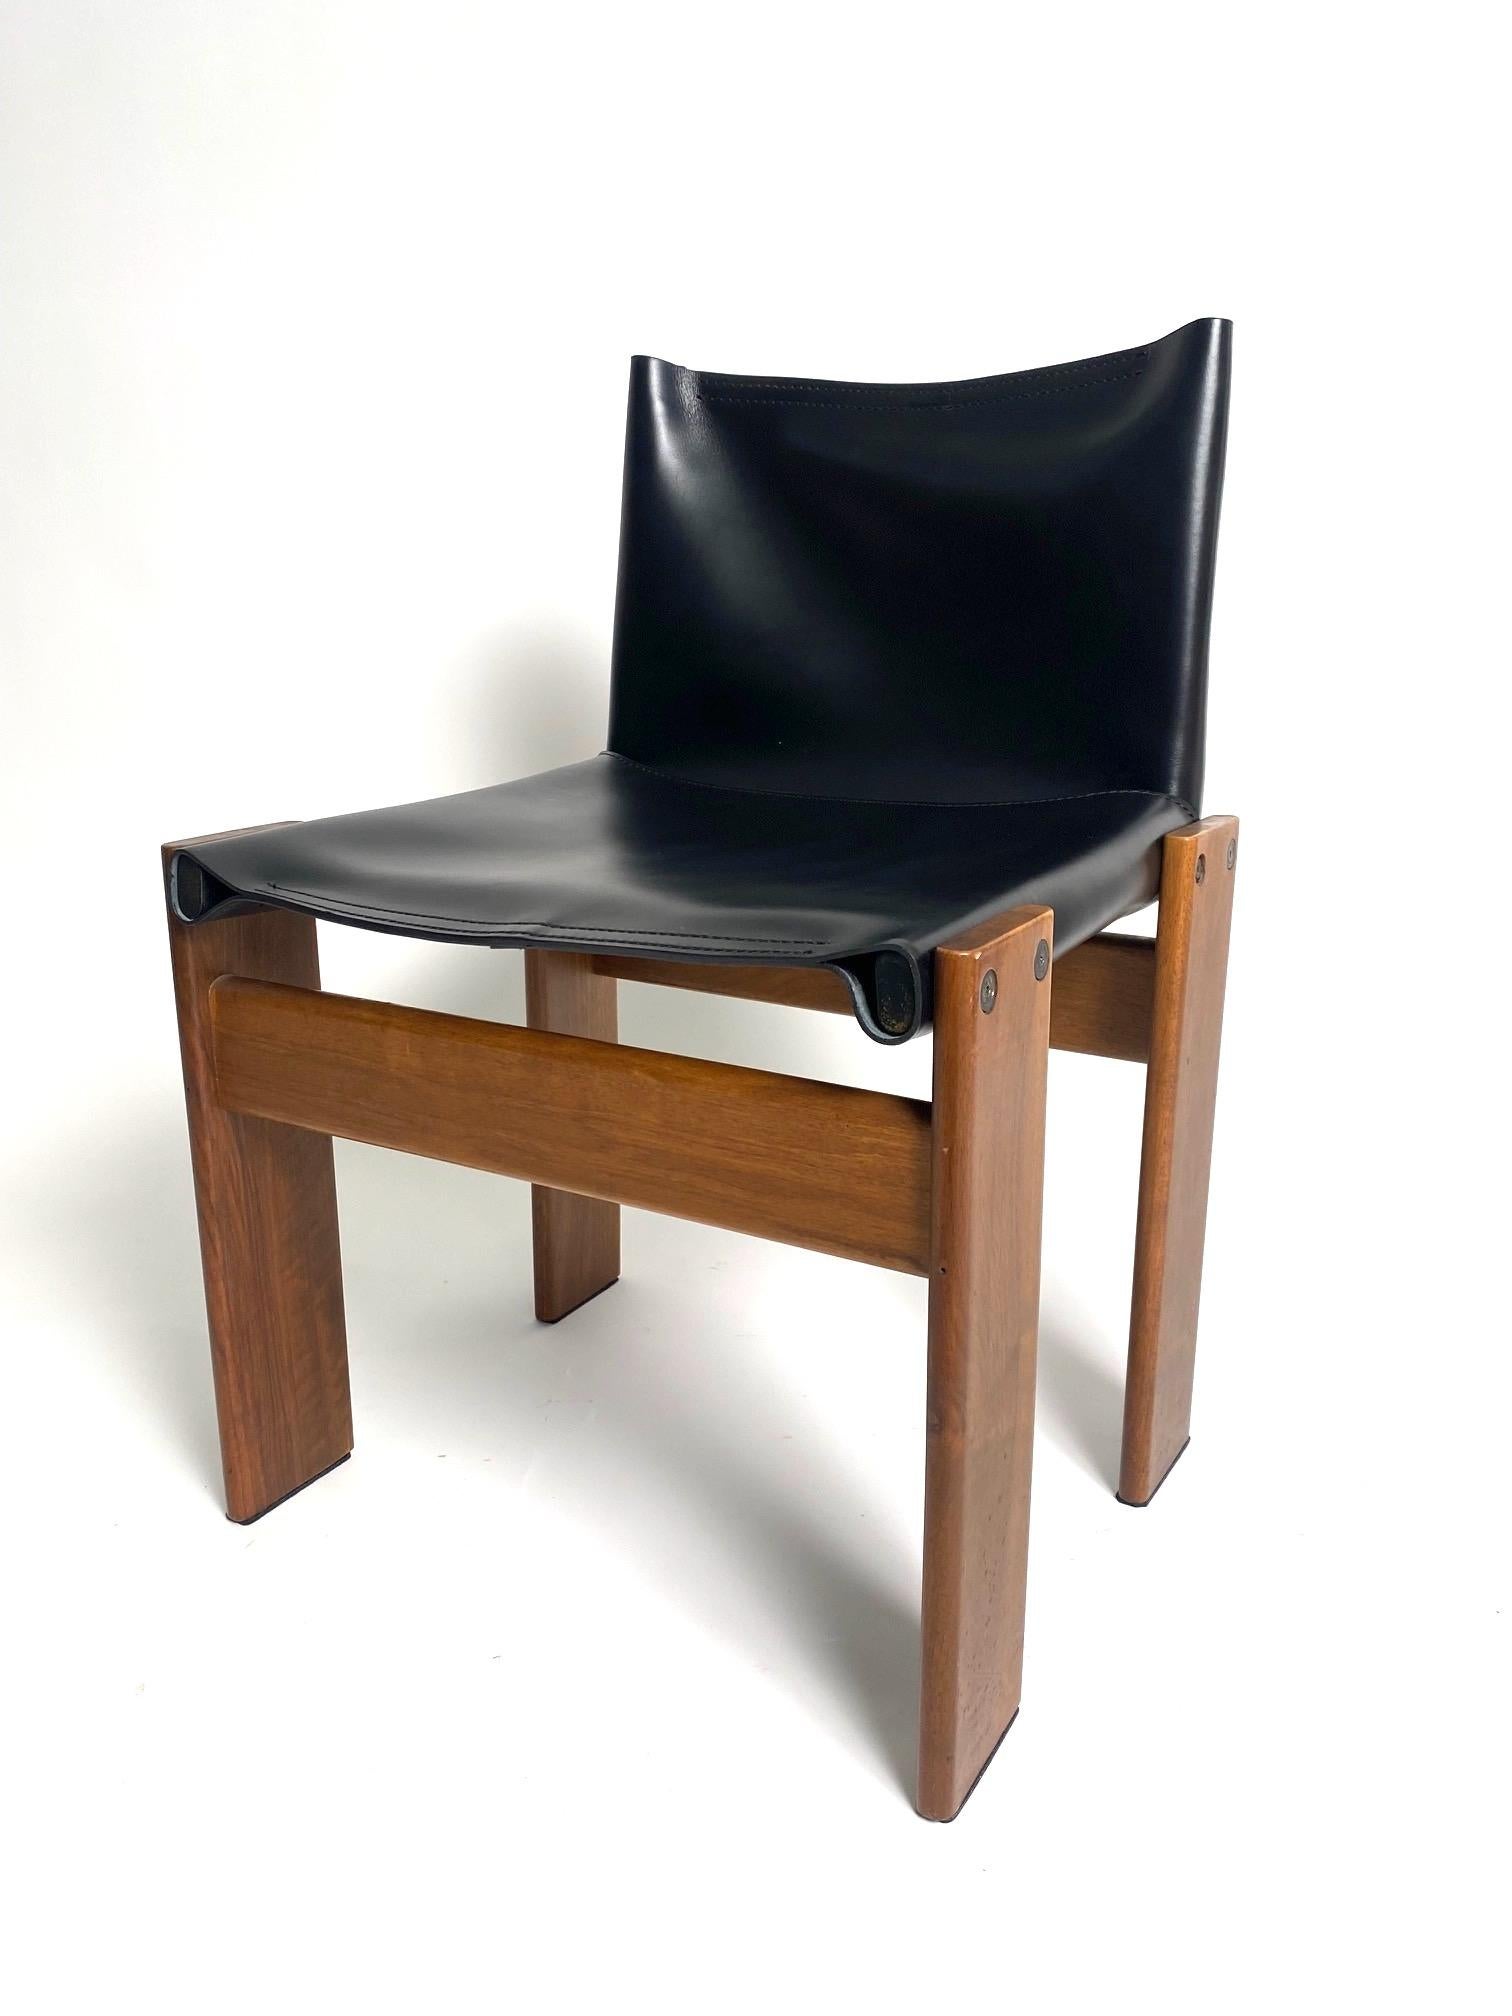 Ensemble de 8 chaises en cuir et bois modèle Monk, Afra & Tobia Scarpa pour Molteni, Italie

C'est l'un des modèles les plus emblématiques et les plus raffinés du célèbre couple d'architectes et de designers italiens Afra & Tobia Scarpa. Des chaises